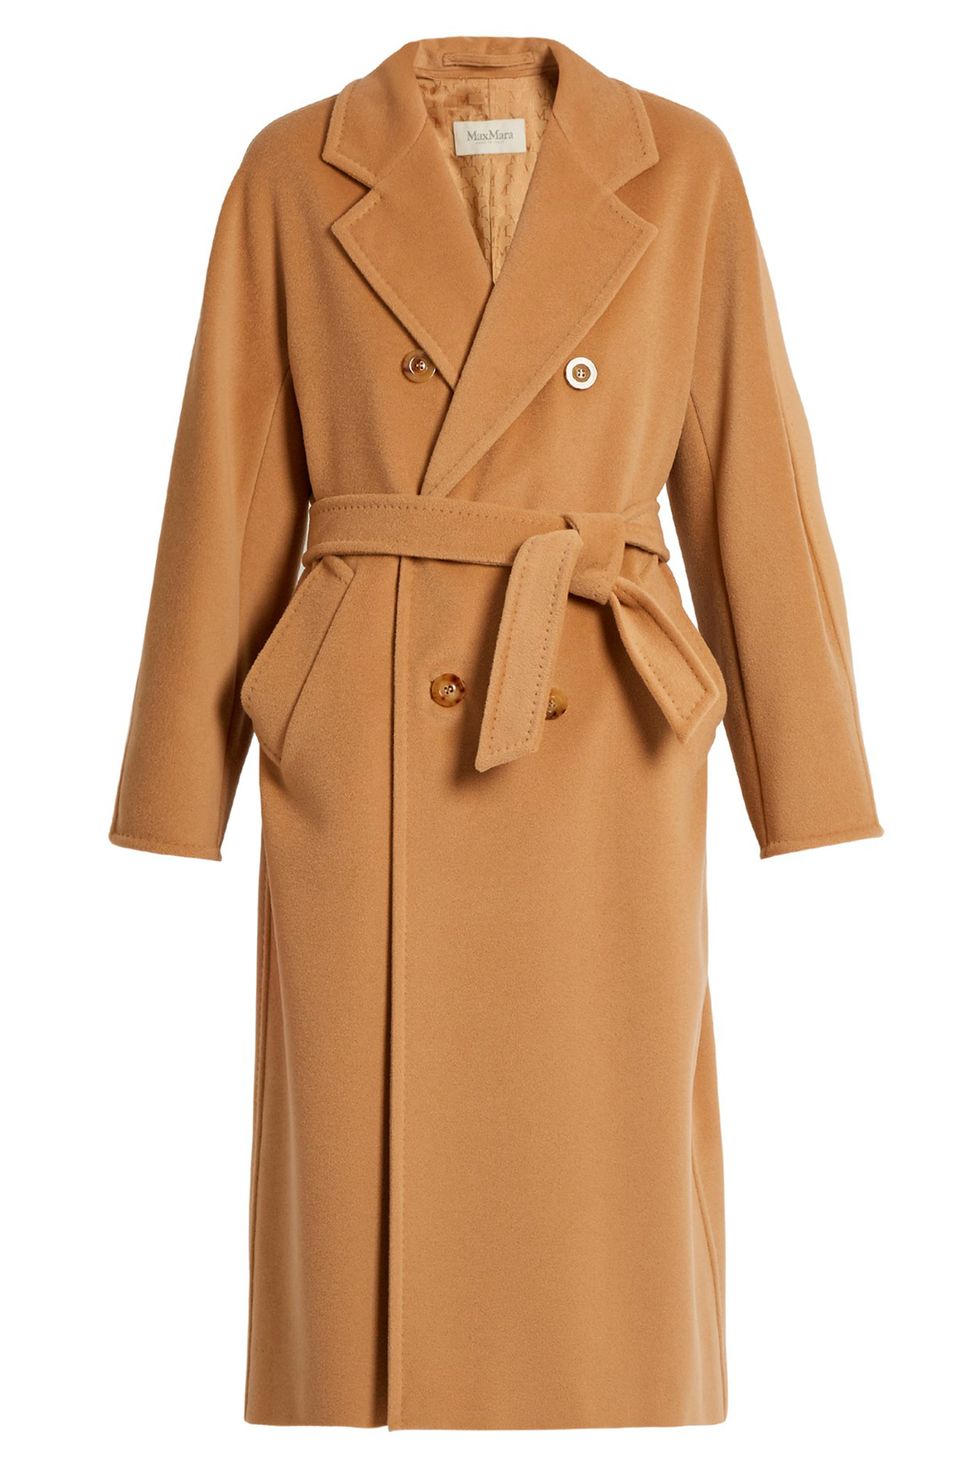 best camel coats, camel coats 2016, designer camel coats, high street camel coats, best coats, winter coats